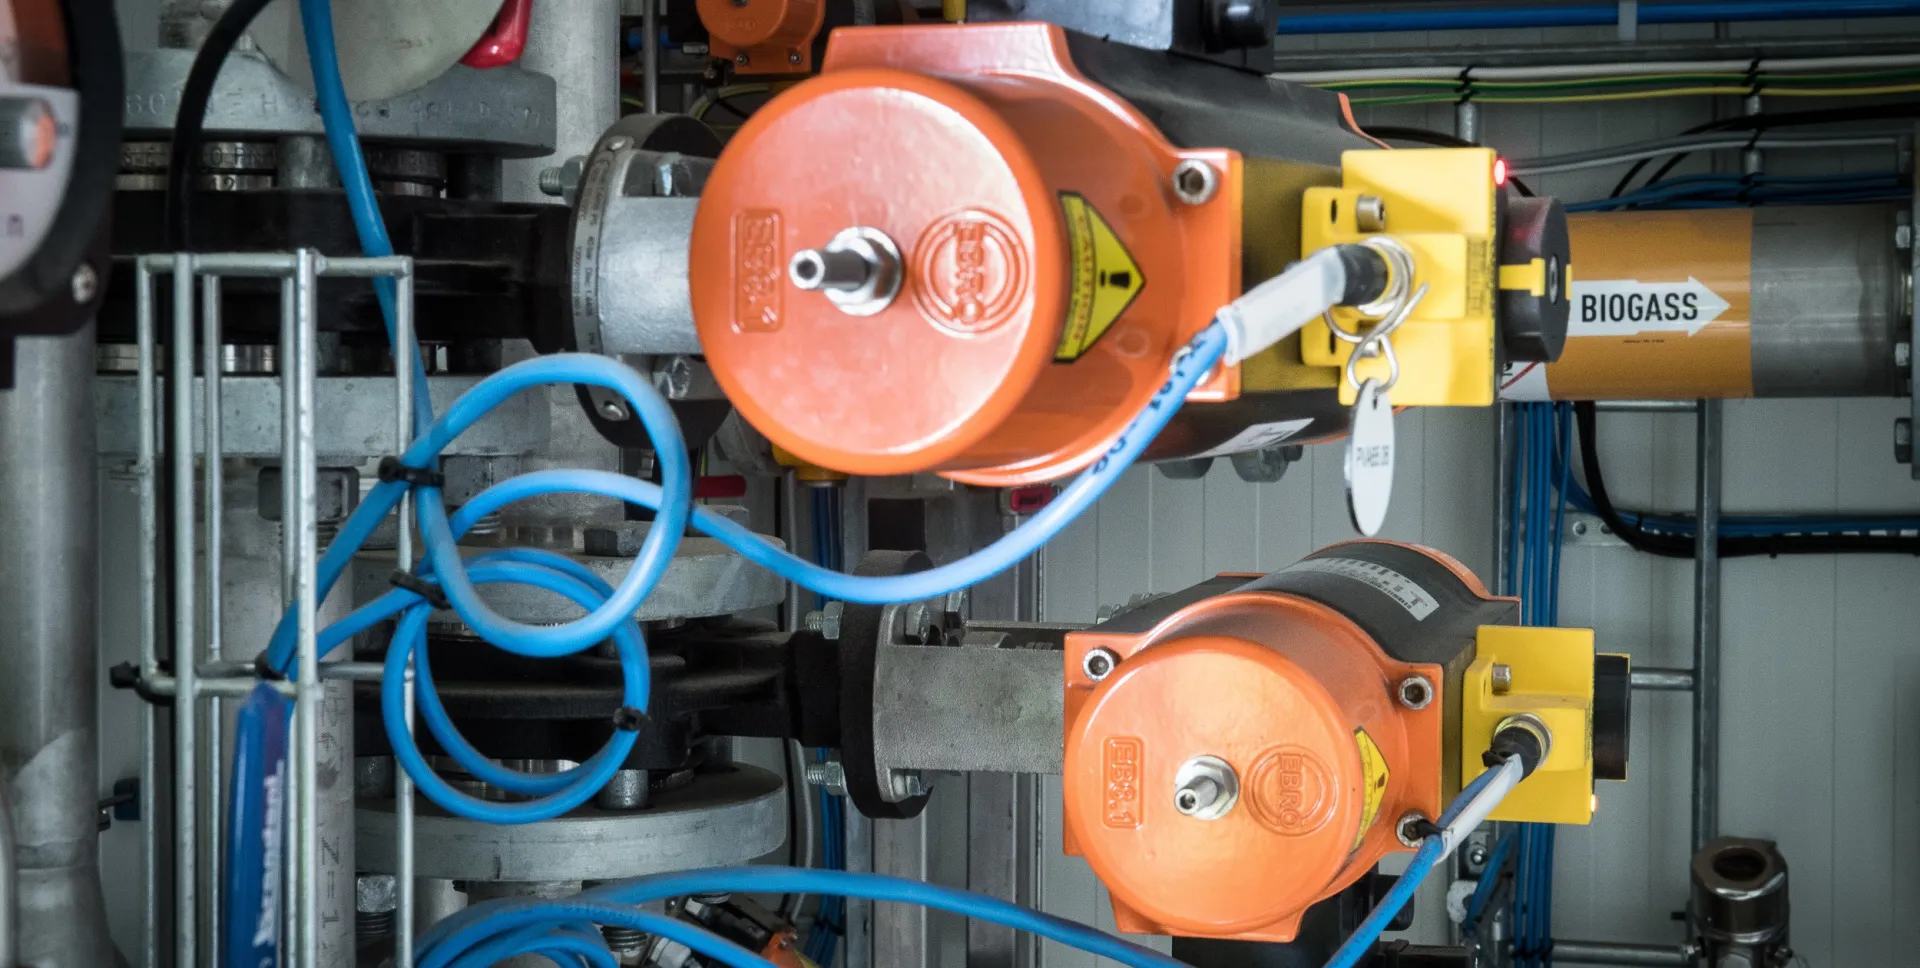 Detaljer i maskinrom til oppgraderingsanlegg til biogassanlegg i Drammen